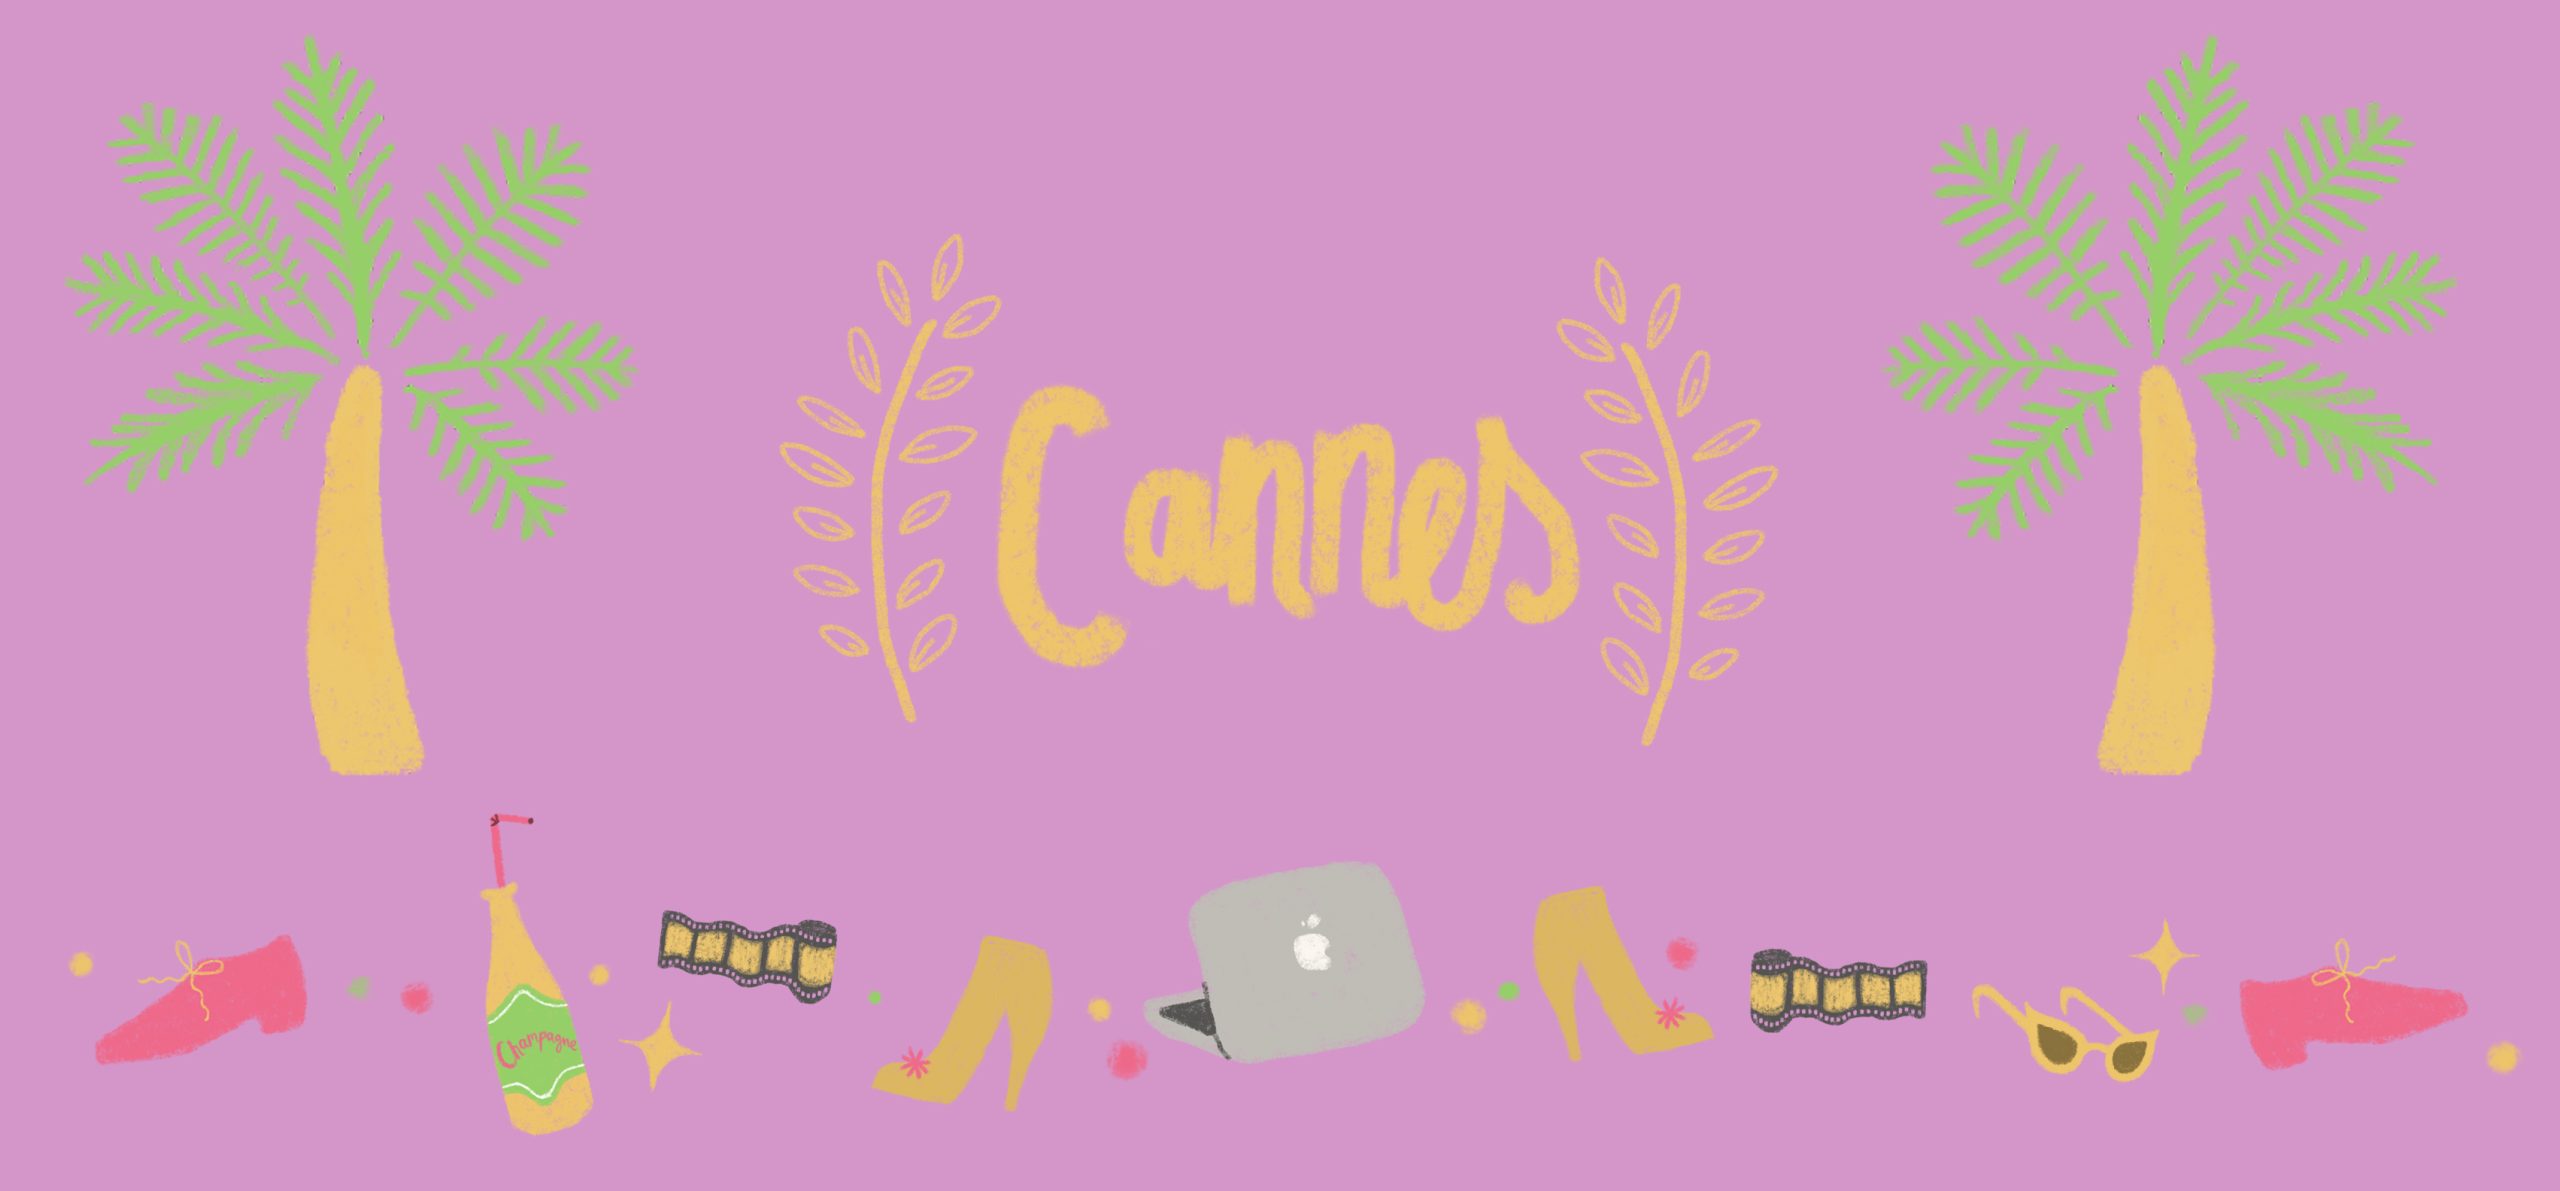 Kuvituskuva, jossa aniliininpunaisella pohjalla teksti "Cannes".